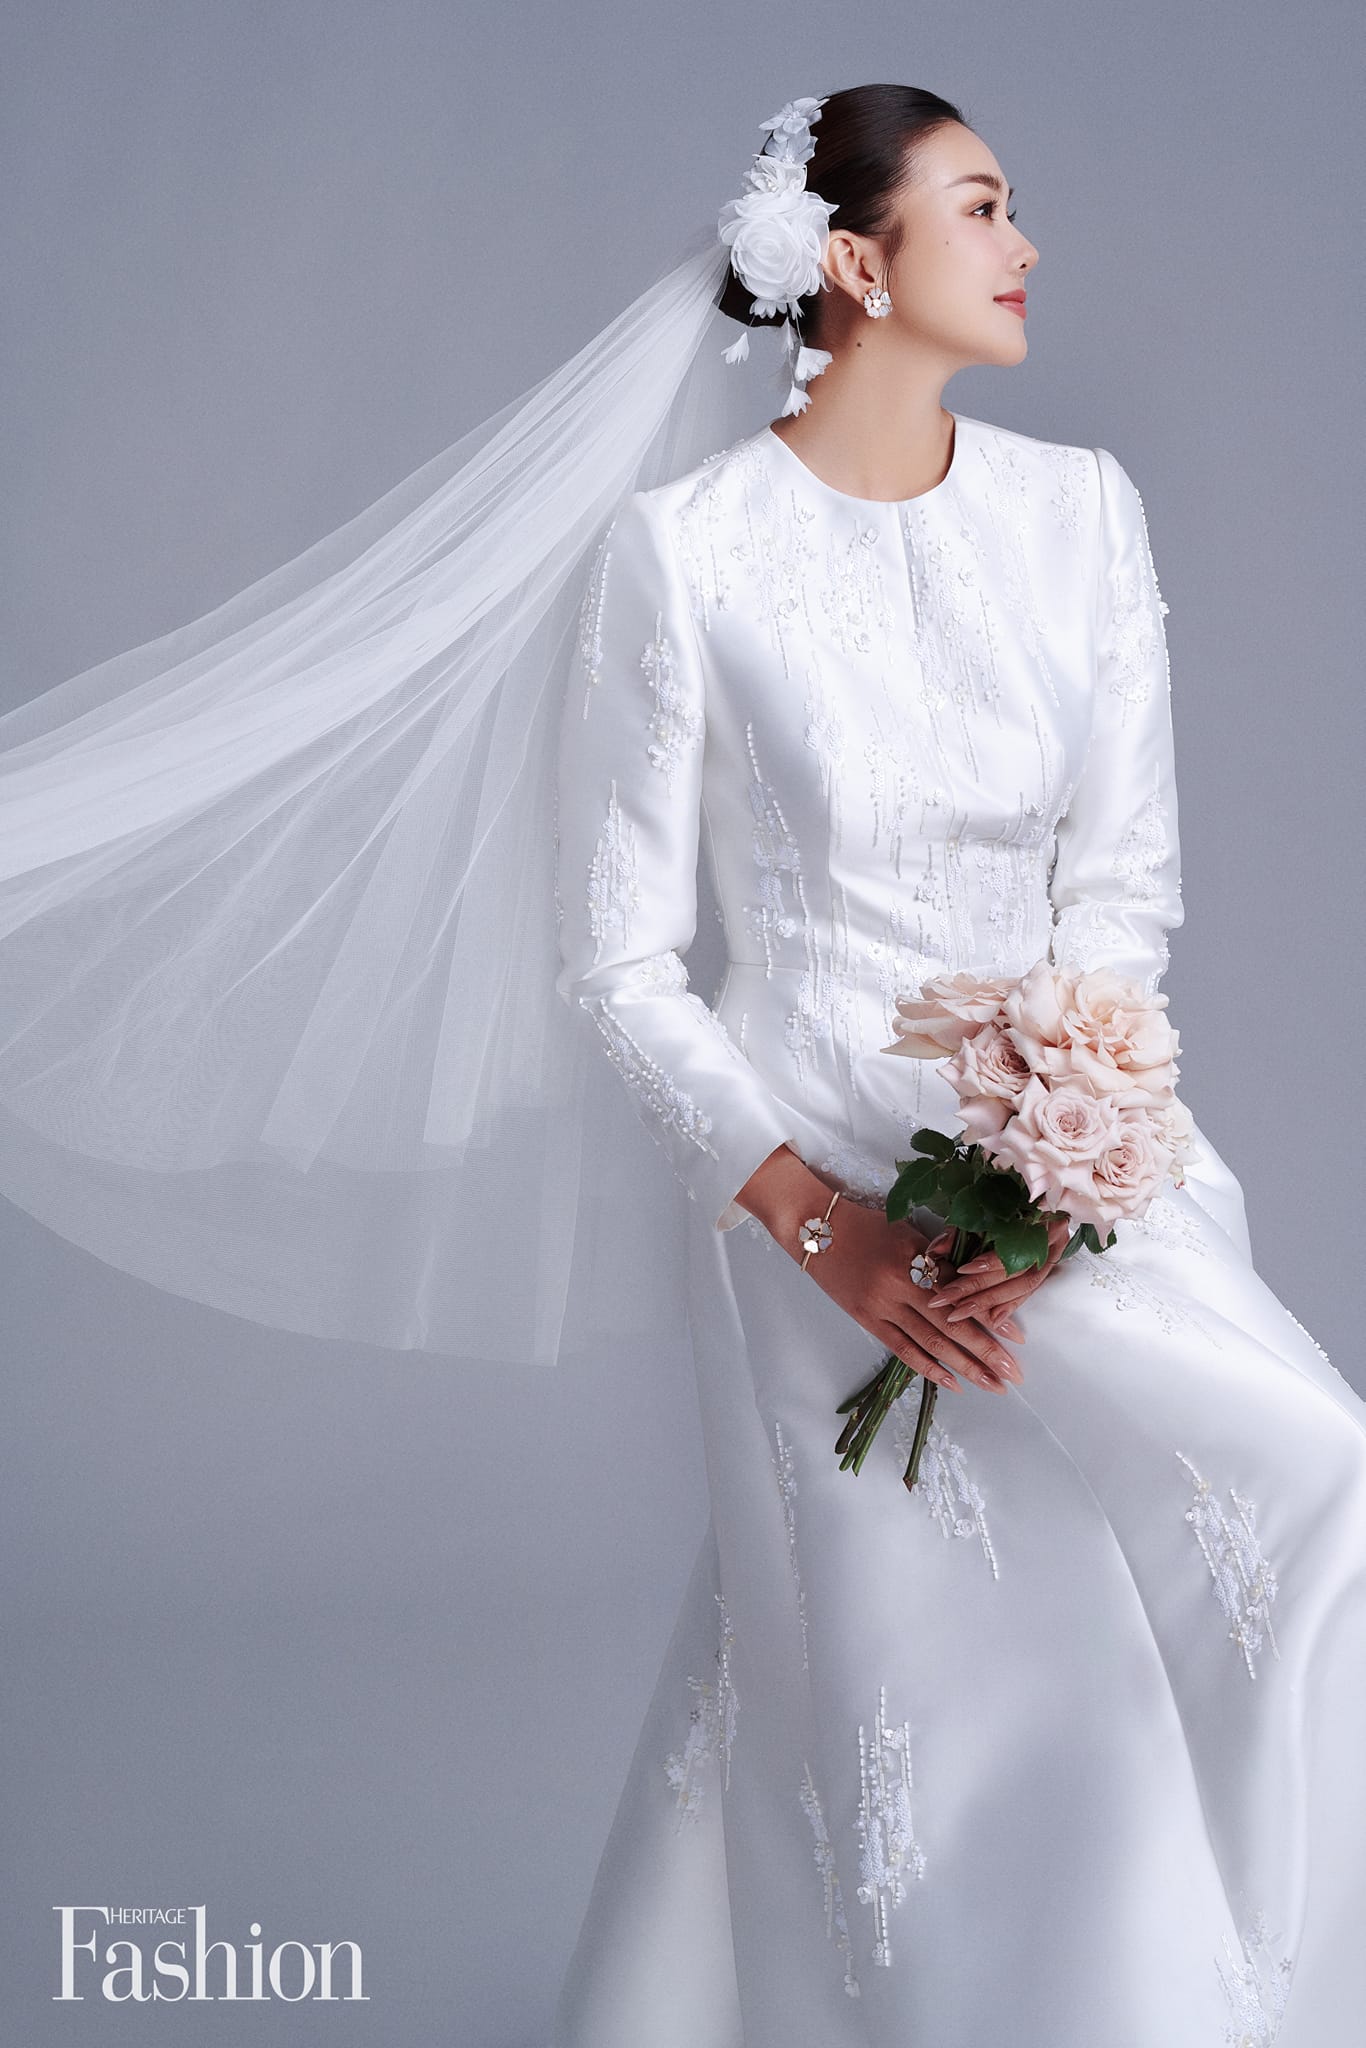 Những lần Thanh Hằng mặc váy cưới đẹp lộng lẫy, càng ngắm càng mong ngày chị đẹp thành cô dâu xịn - Ảnh 2.